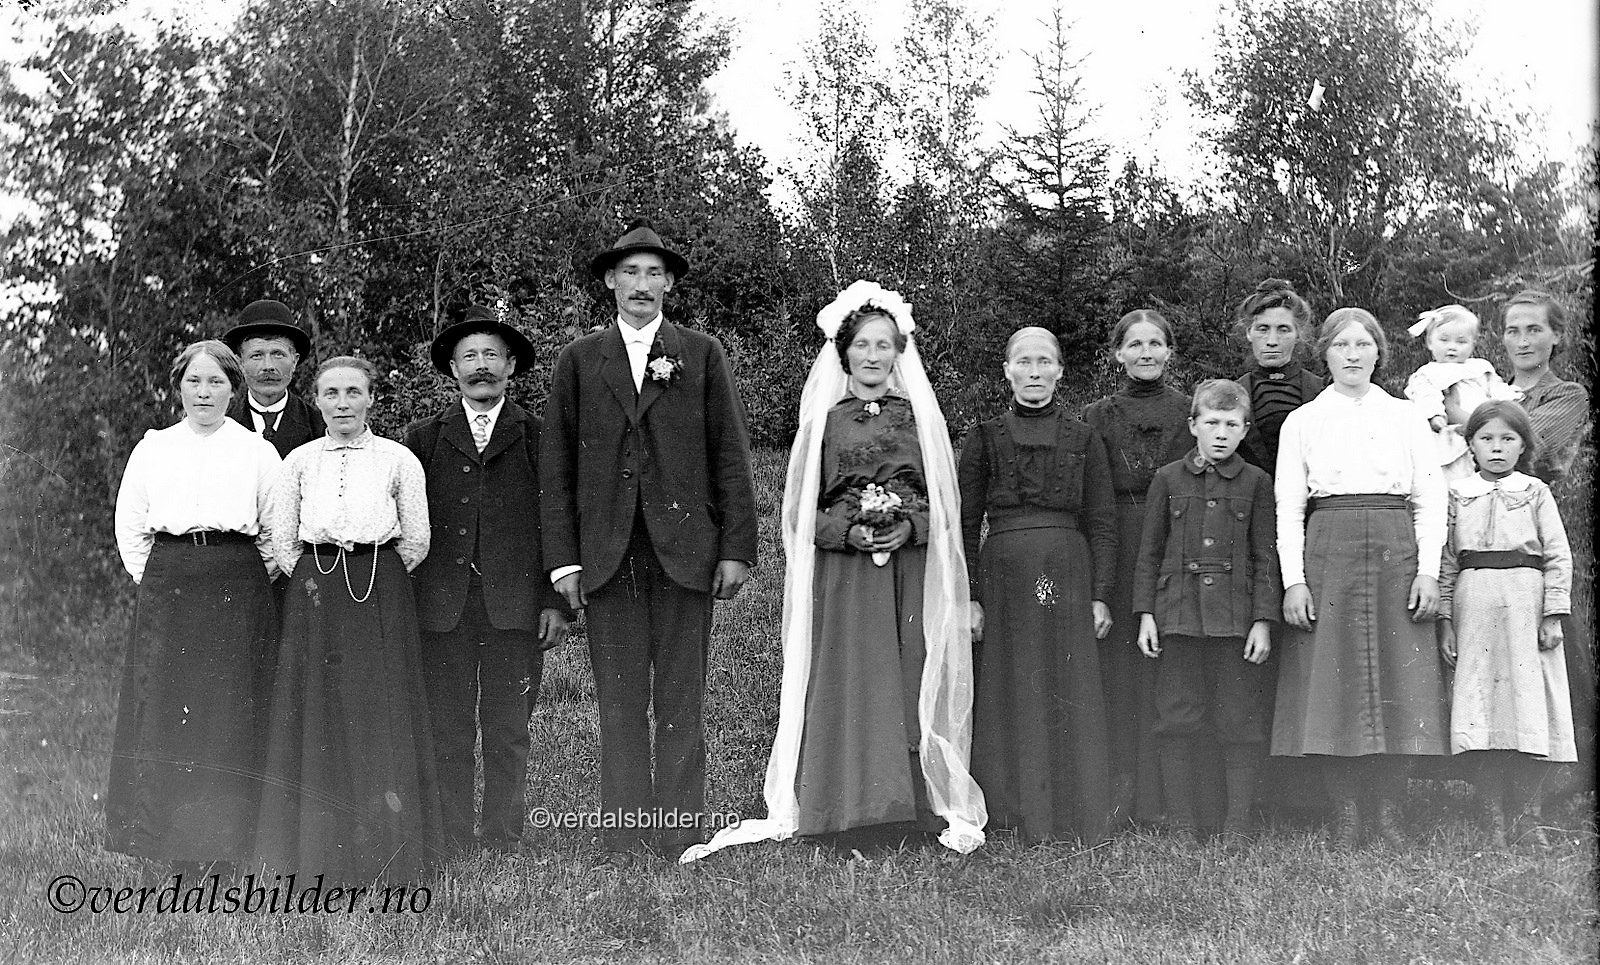 Paret, fikk tre barn, Karl Edvin, Sven og Helga, mens de bodde på i Vuku. Sven var bare fire i da han døde i 1924. Paret bodde flere steder i Vuku. Når barna kom var bosted Bredingsberg, Helberg og Nersveet. I 1926 flyttet paret til Kall hvor hun var fra. Han var fra et Ovandsjø i Sandviken kommun. Hjelp med opplysninger, Kjetil dillan. Foto av Ole Snekkermo som var forlover i bryllupet. Bildet utlånt av Kim Solberg. &nbsp;<br />
Fra Bjørn Kempe har en mottatt følgende kommentarer: <span dir=